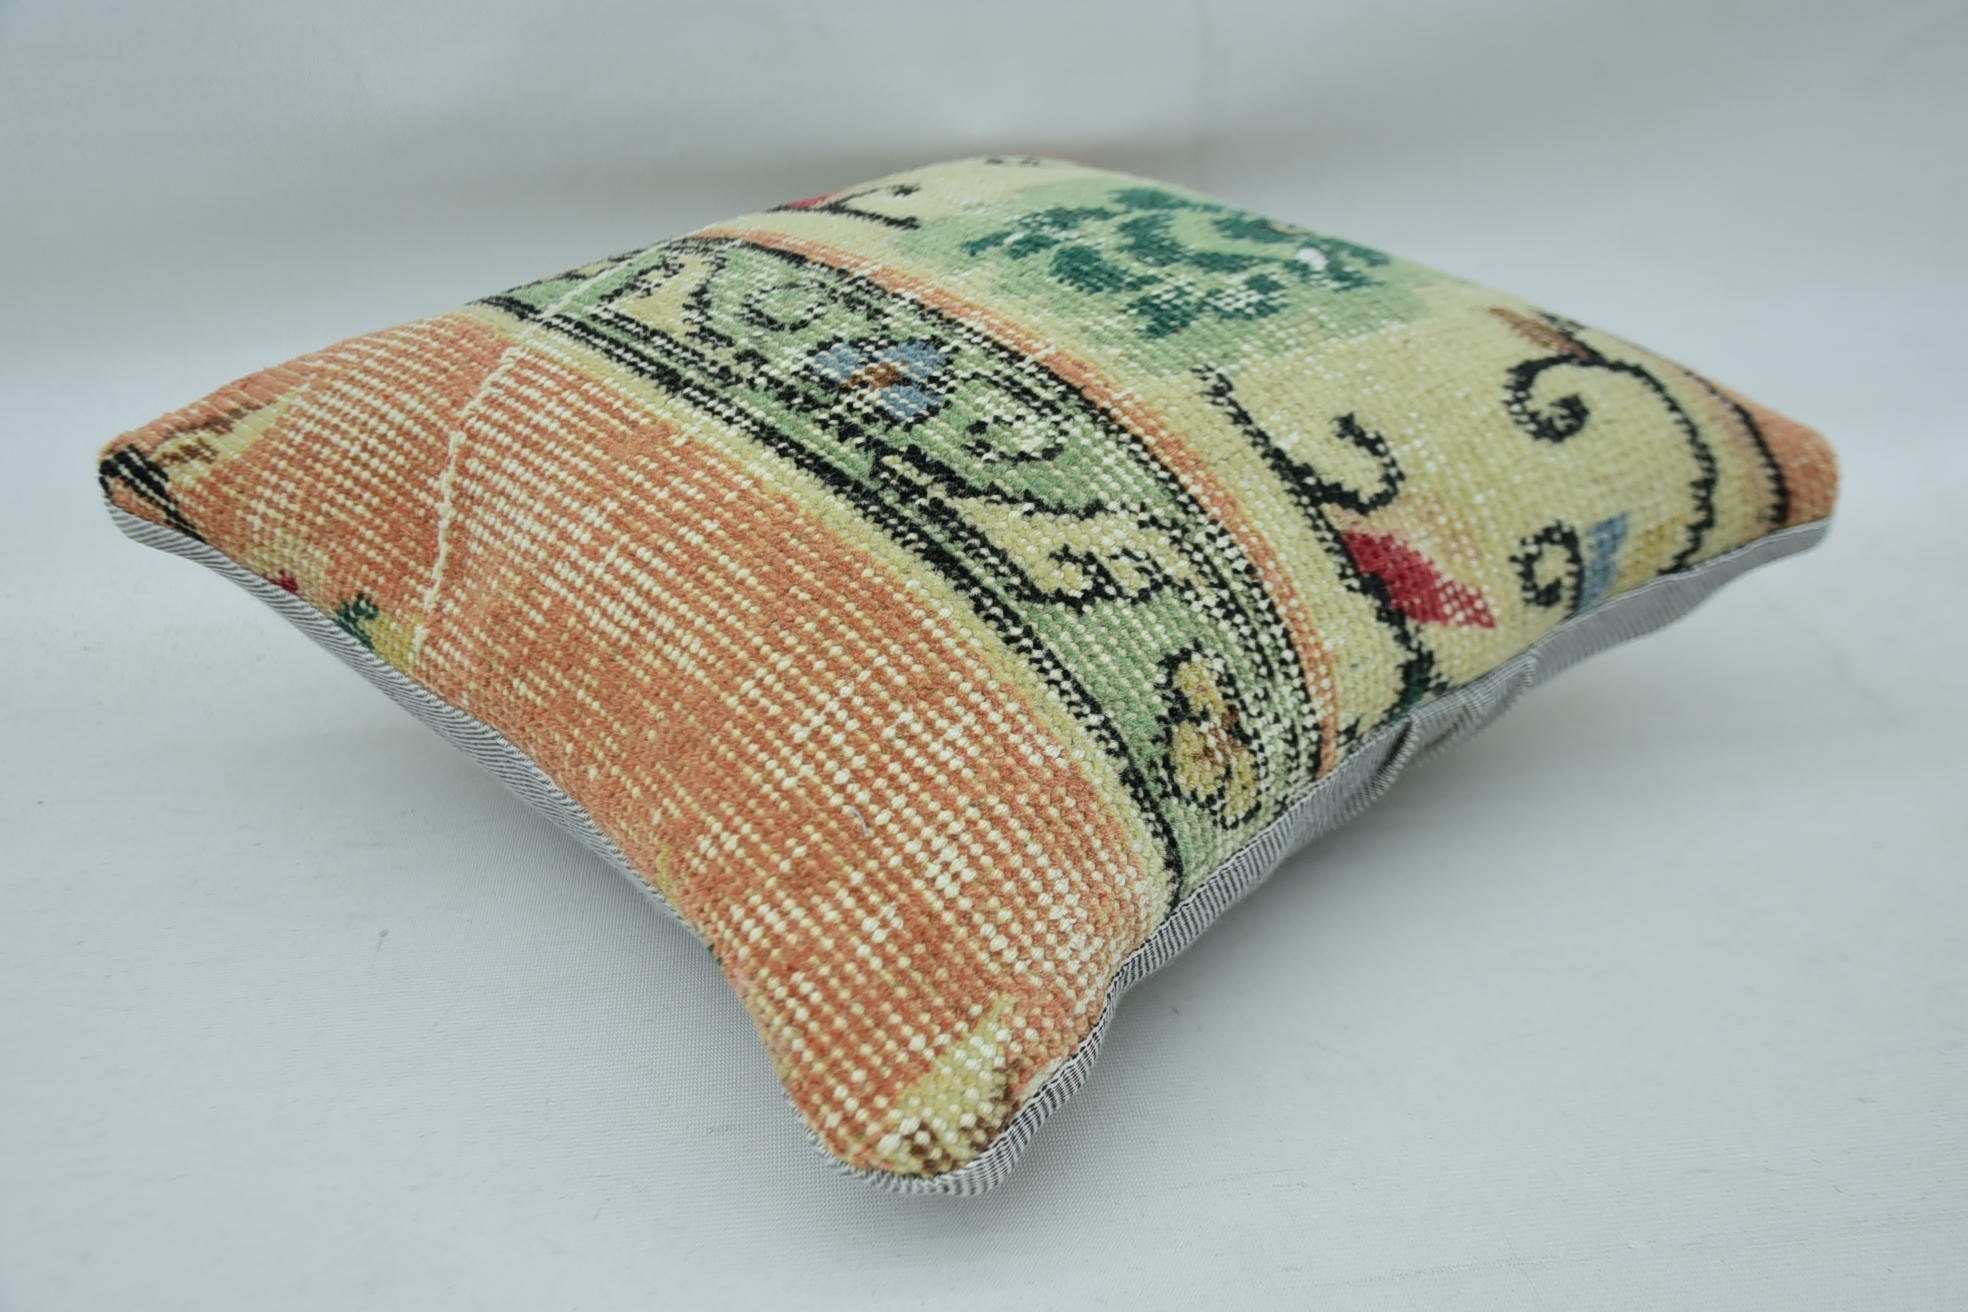 Boho Pillow, Aztec Pillow, 14"x14" Beige Cushion Case, Vintage Pillow, Decorative Pillow Case, Antique Pillows